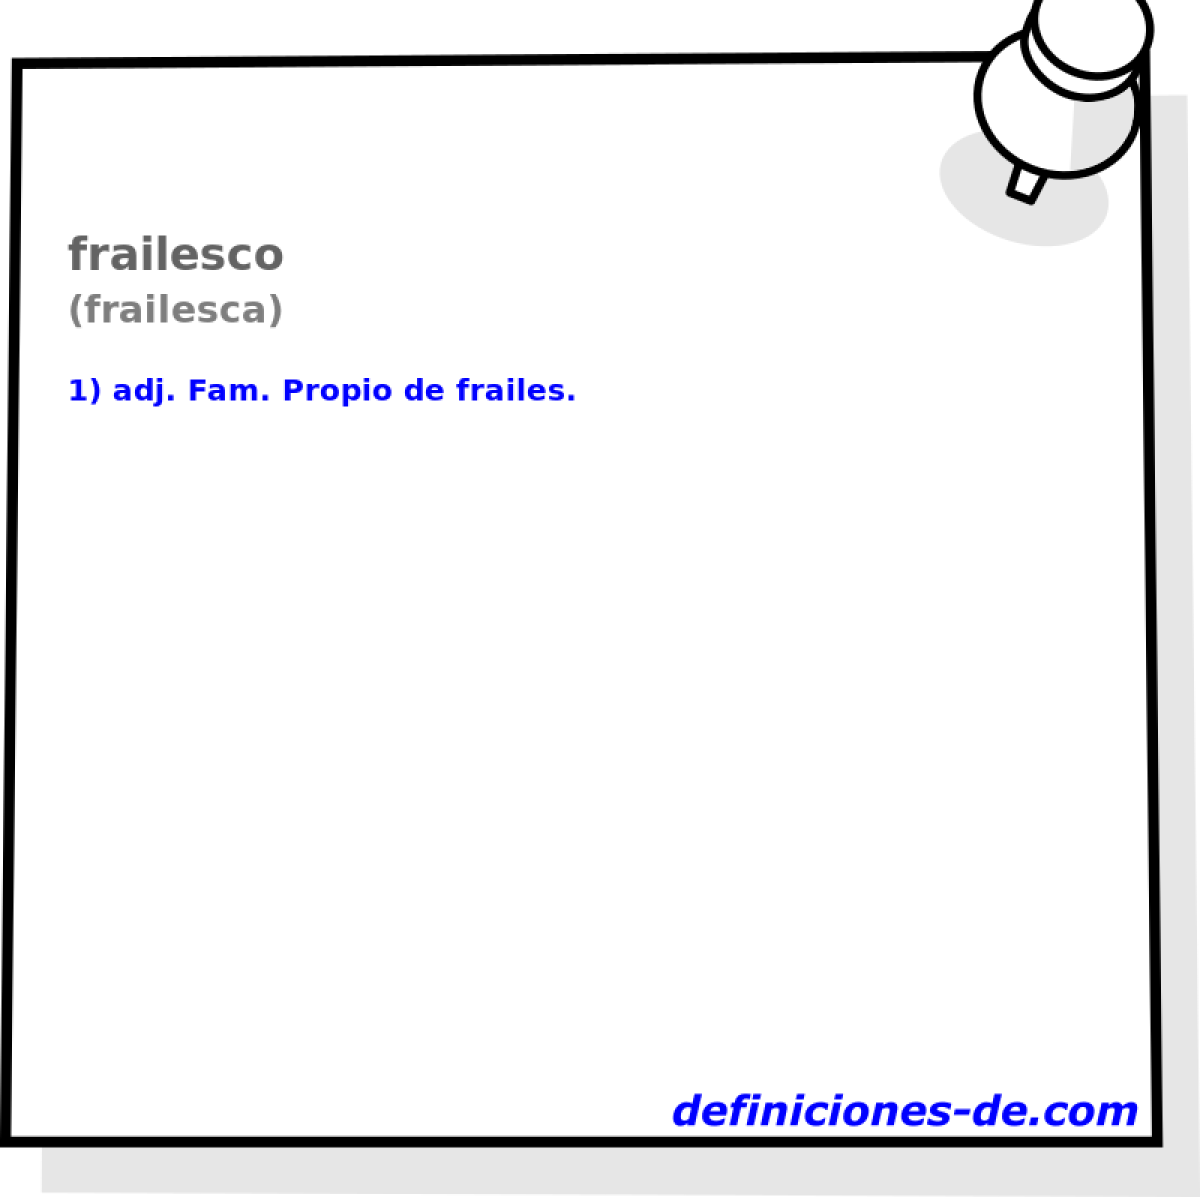 frailesco (frailesca)